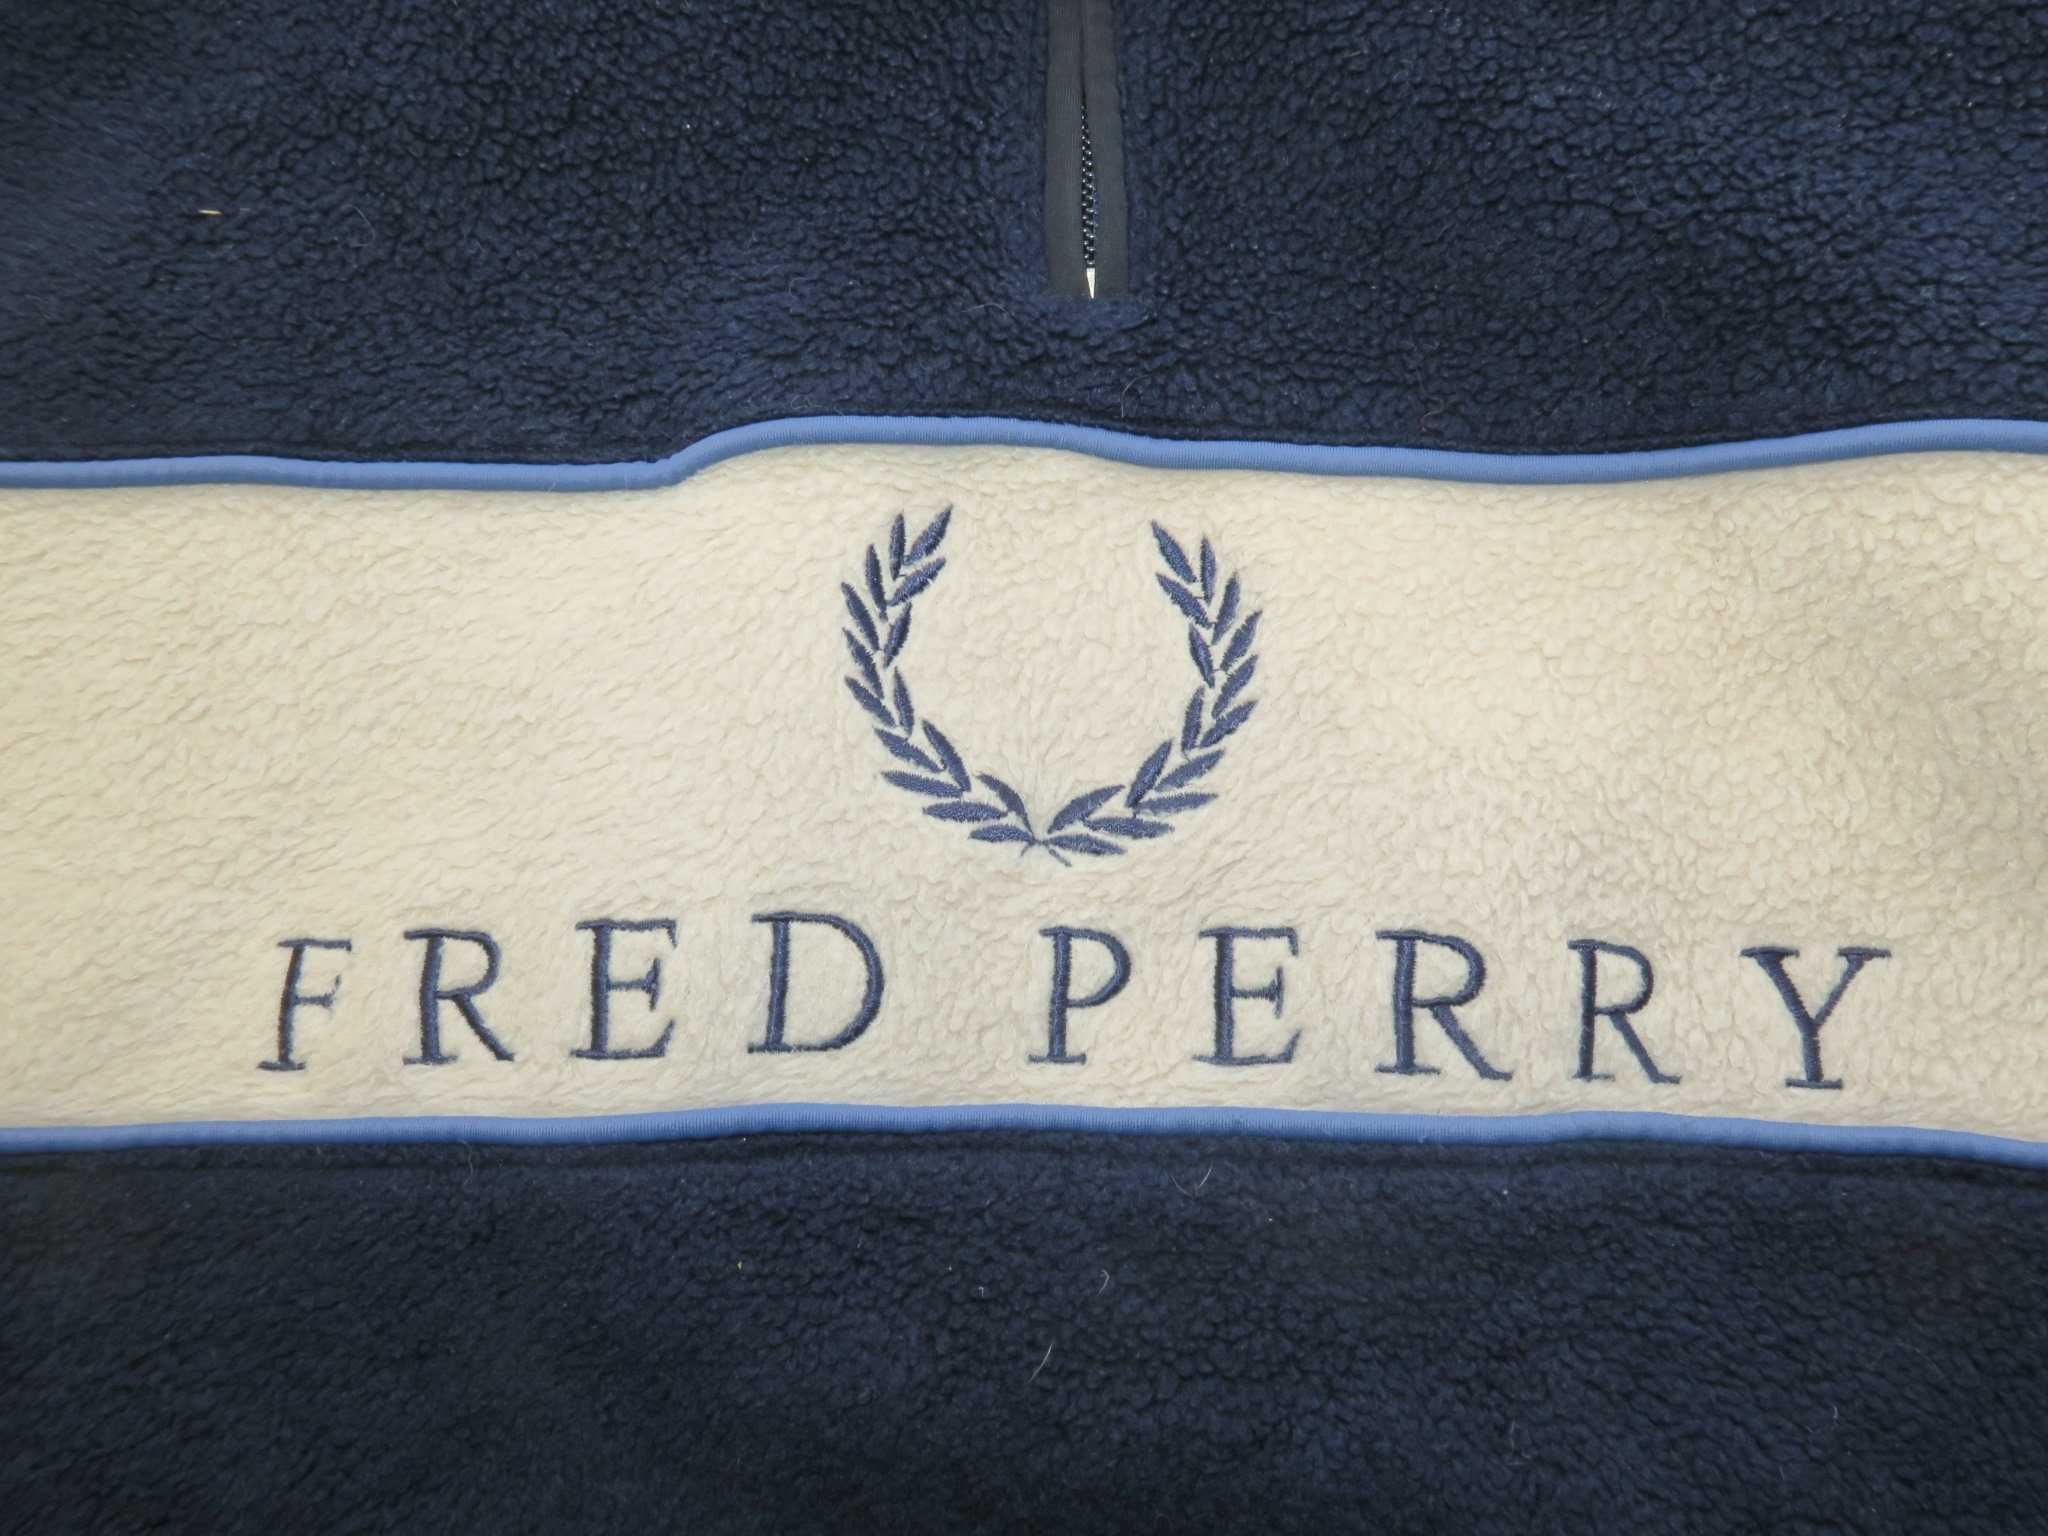 Fred Perry polar z kieszonkami na zamek spellout L/XL